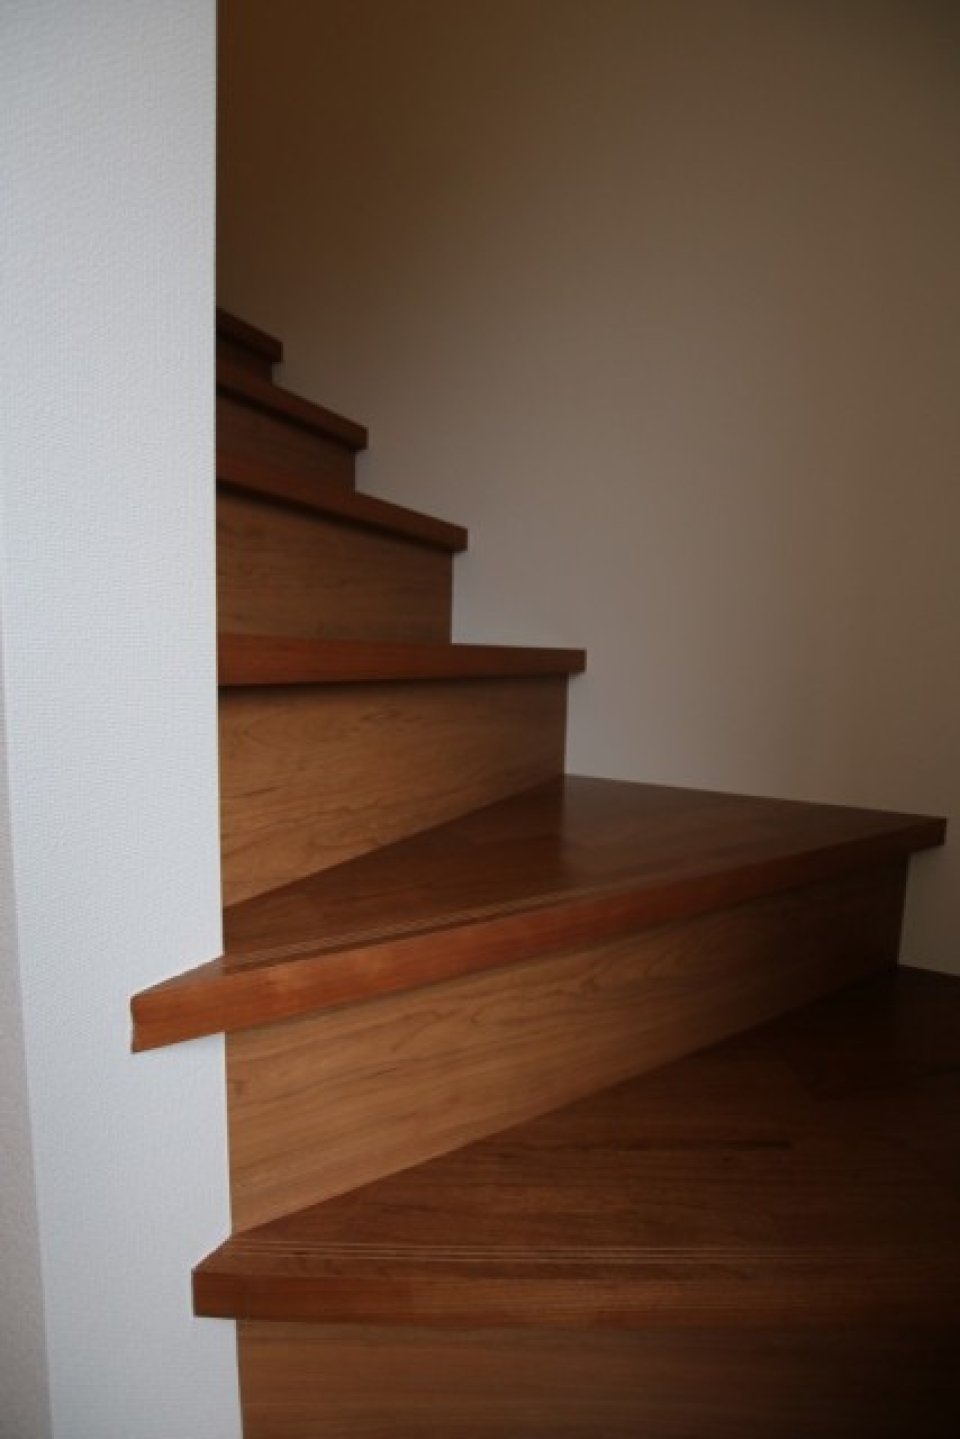 1階は玄関と階段だけの構成。